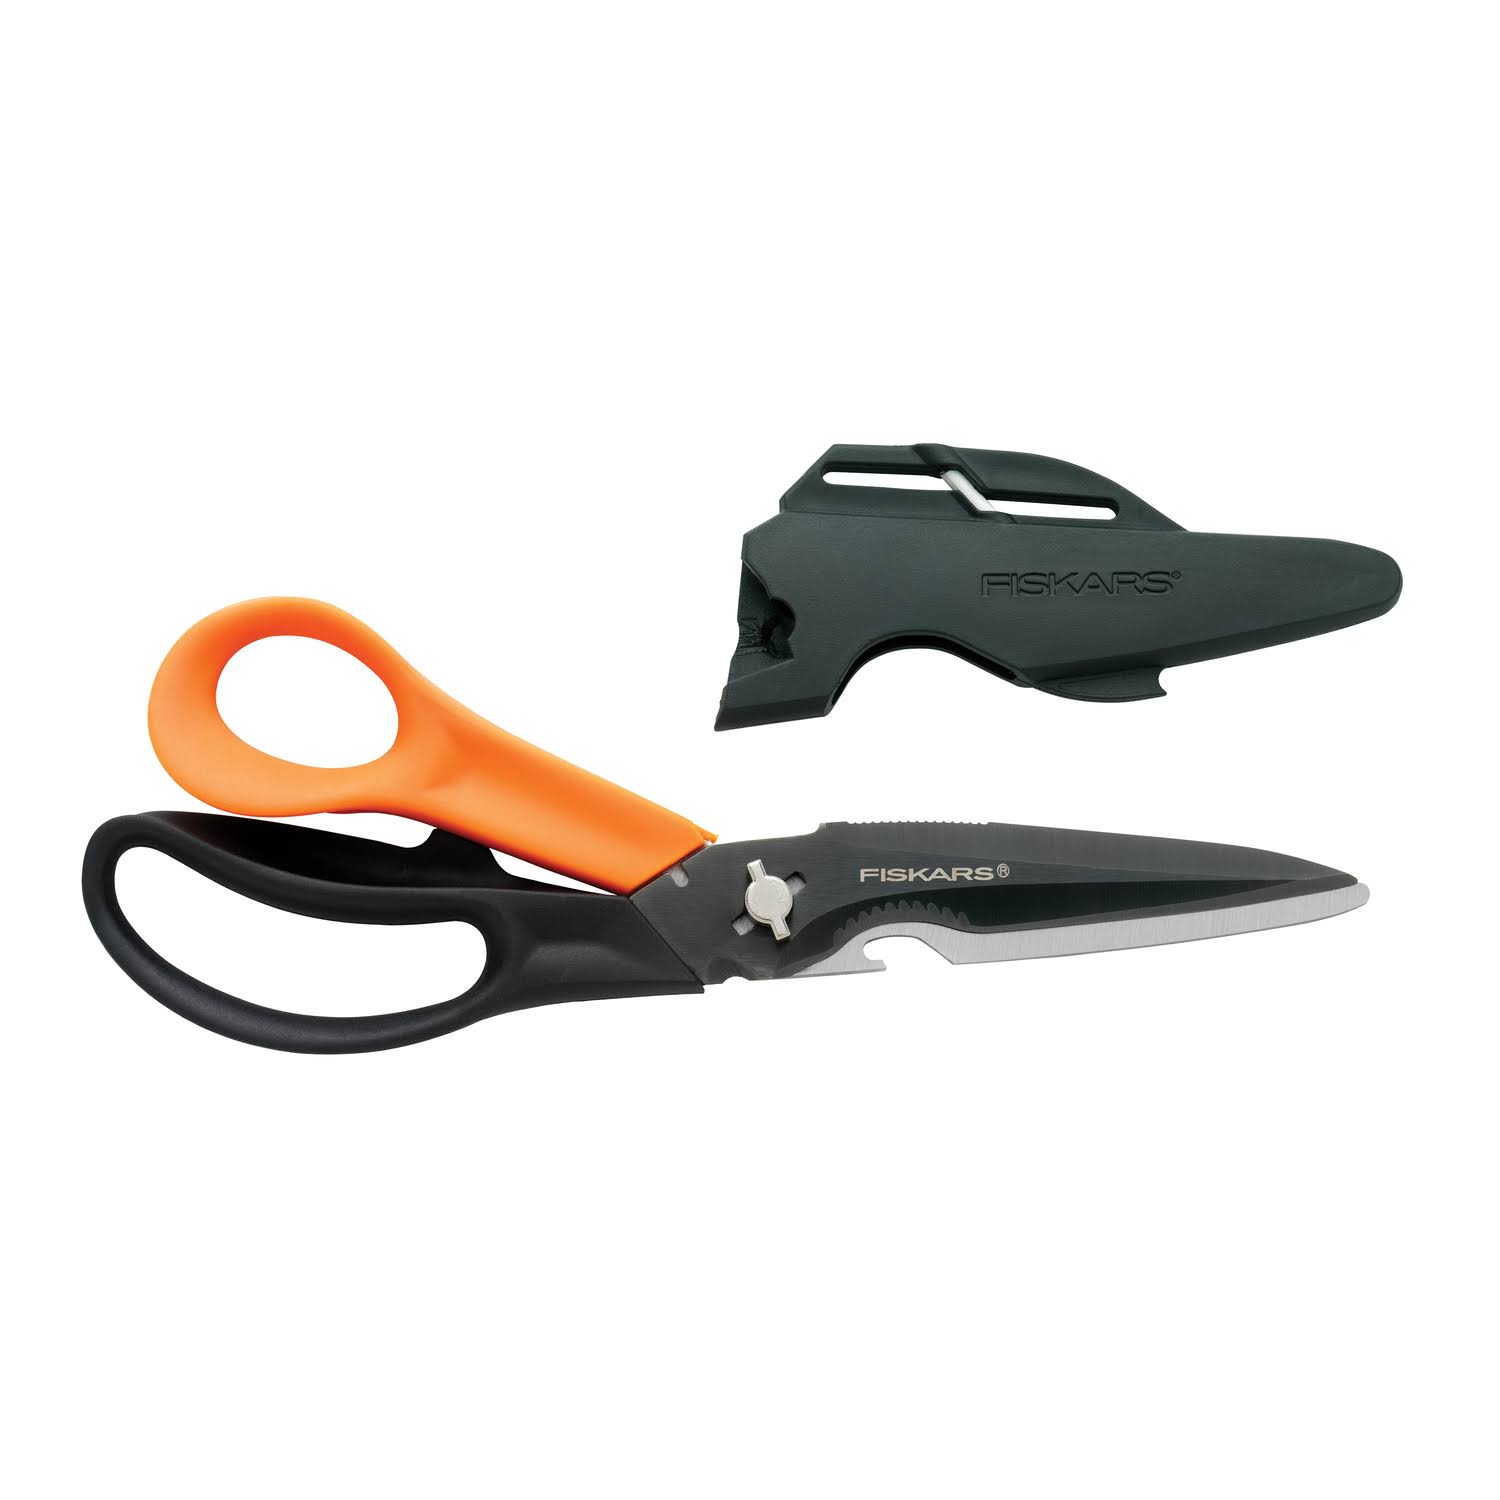 Fiskars Stainless Steel Garden Scissors 356922-1009